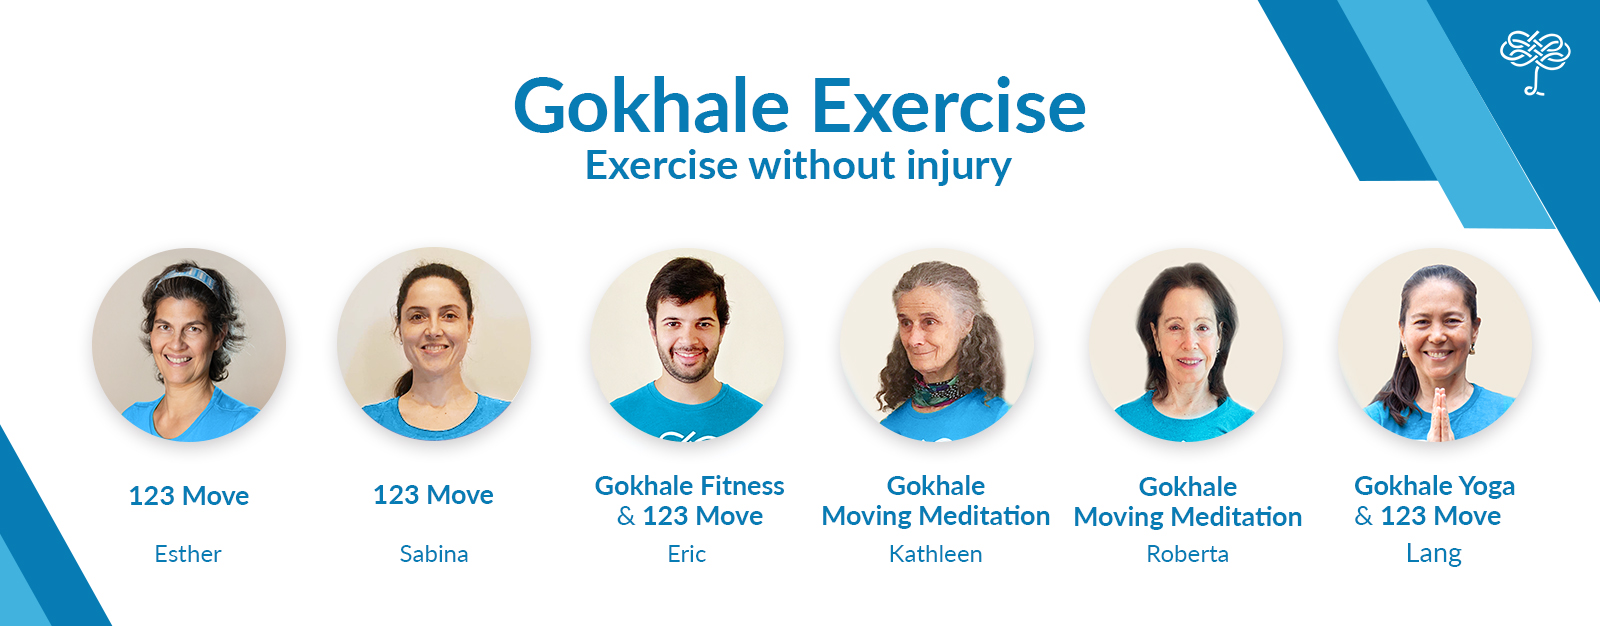 Gokhale Exercise